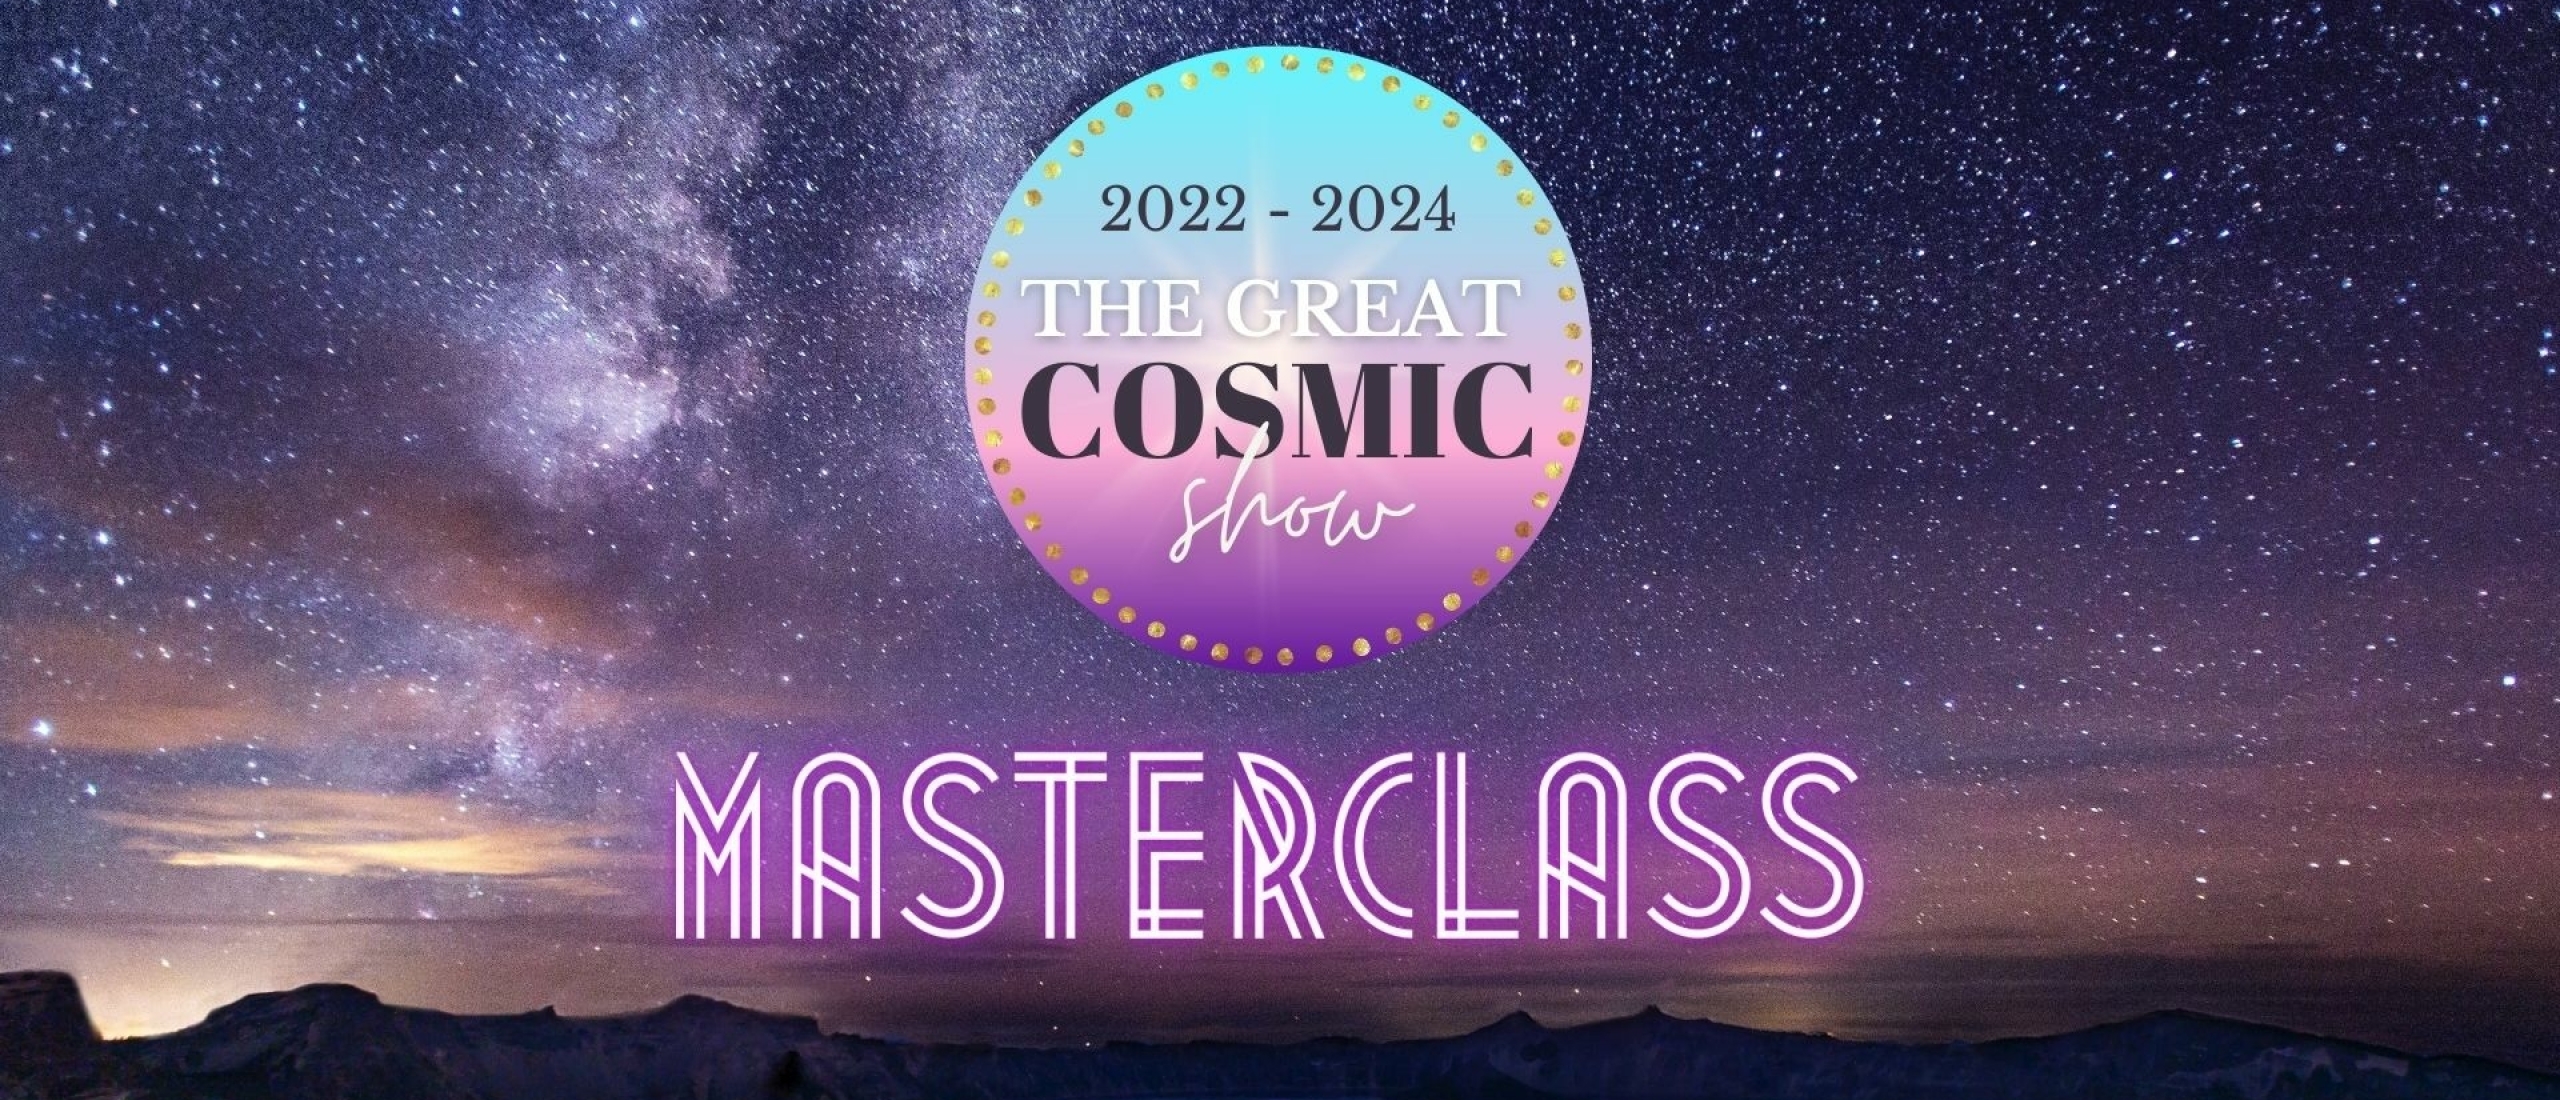 Masterclass 3 september 2022 (DUTCH)